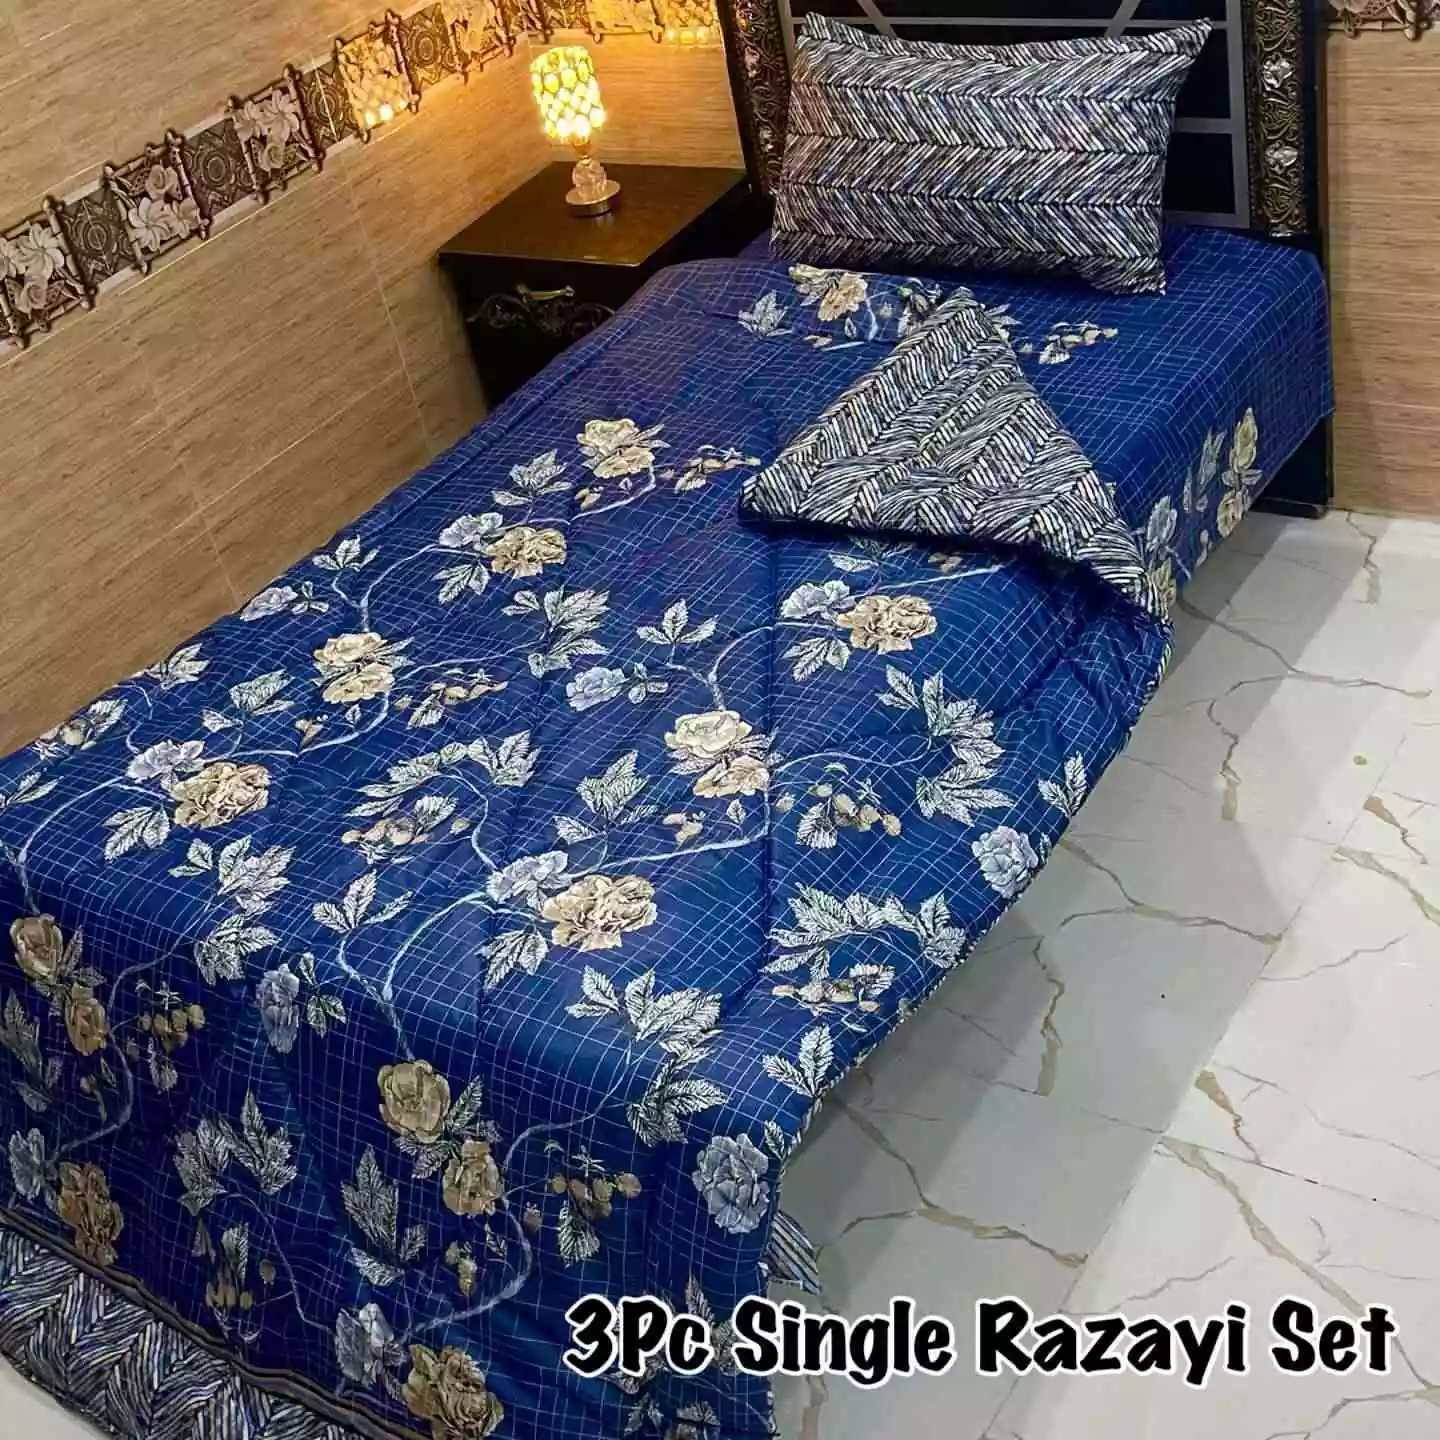 DF-VRSSB-15: DFY 3Pc Single Bed Vicky Razai Set